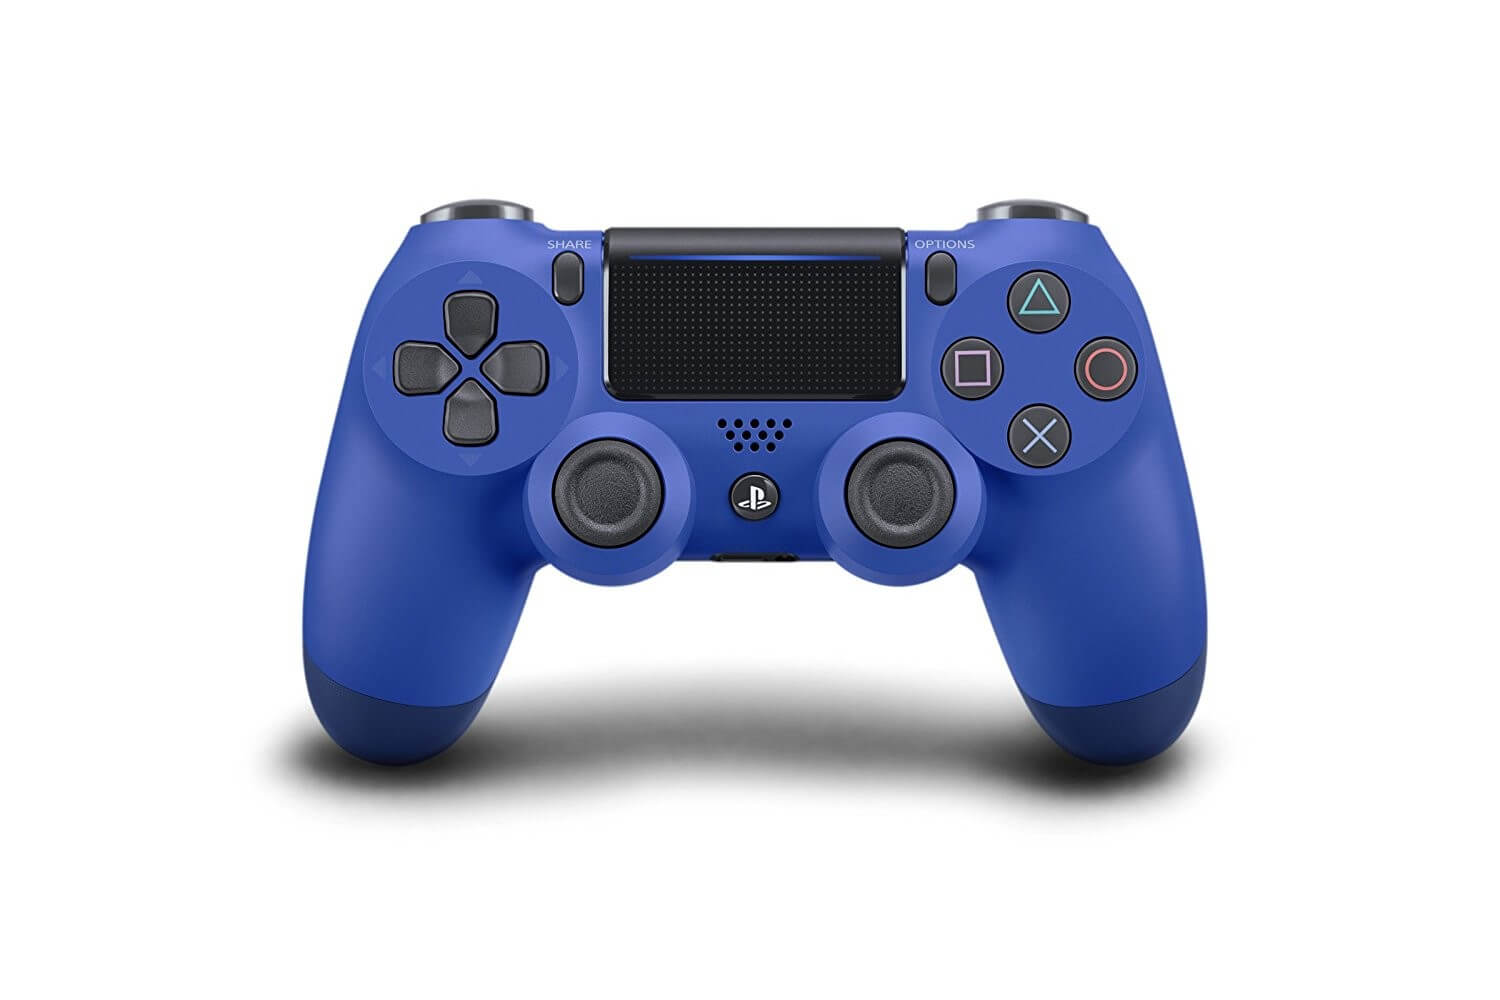 Sony PlayStation DualShock 4 V2 Controller - Wave Blue